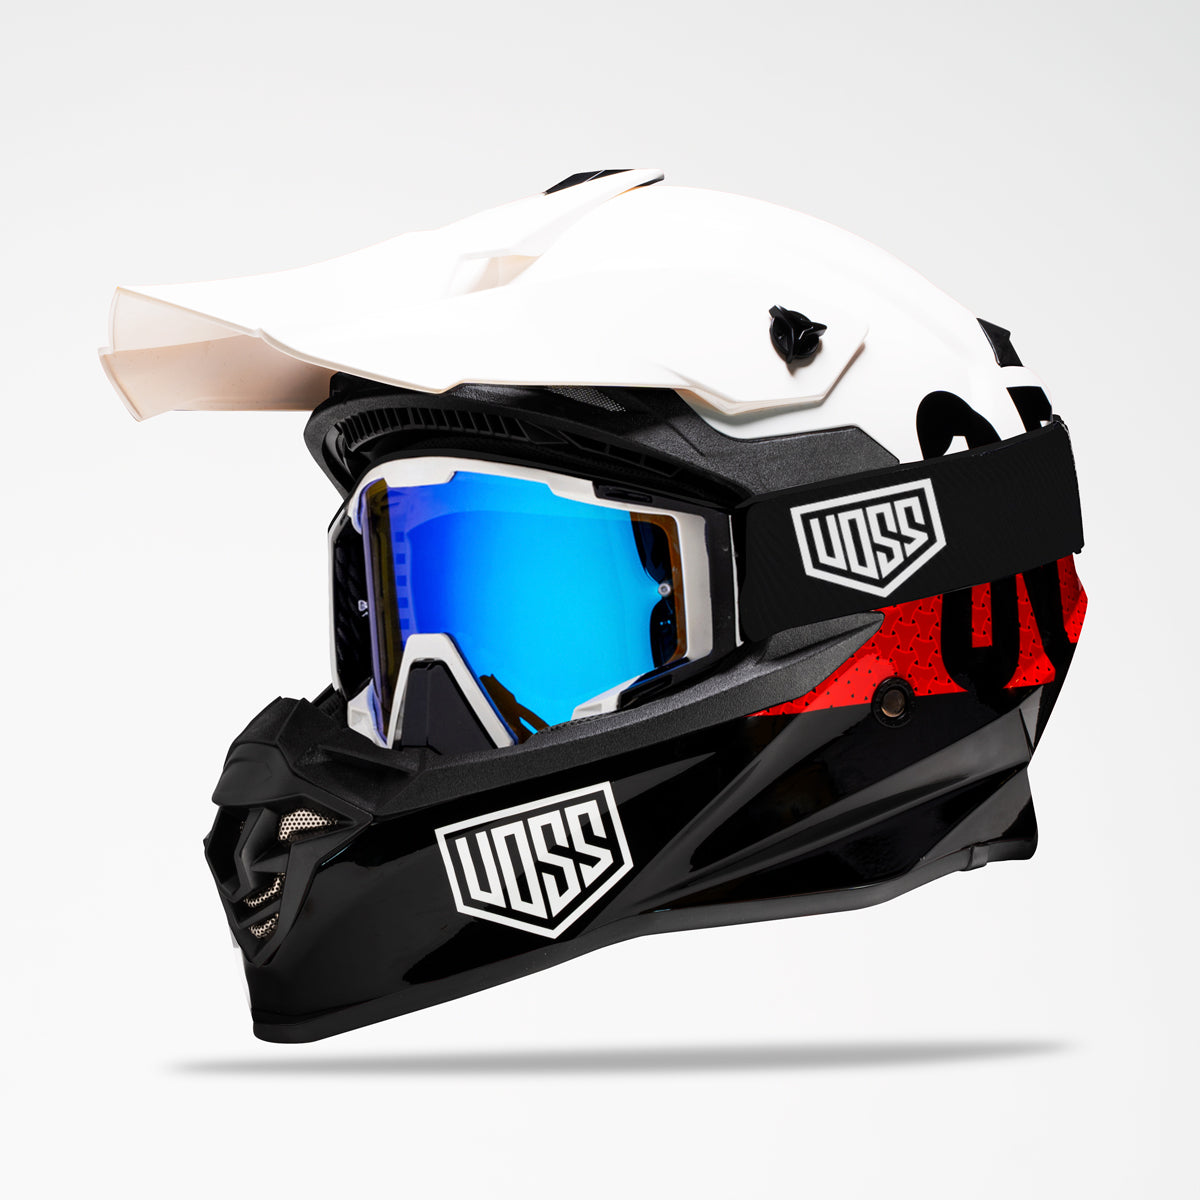 Voss 801 X1 Pro Dirt Crux Helmet